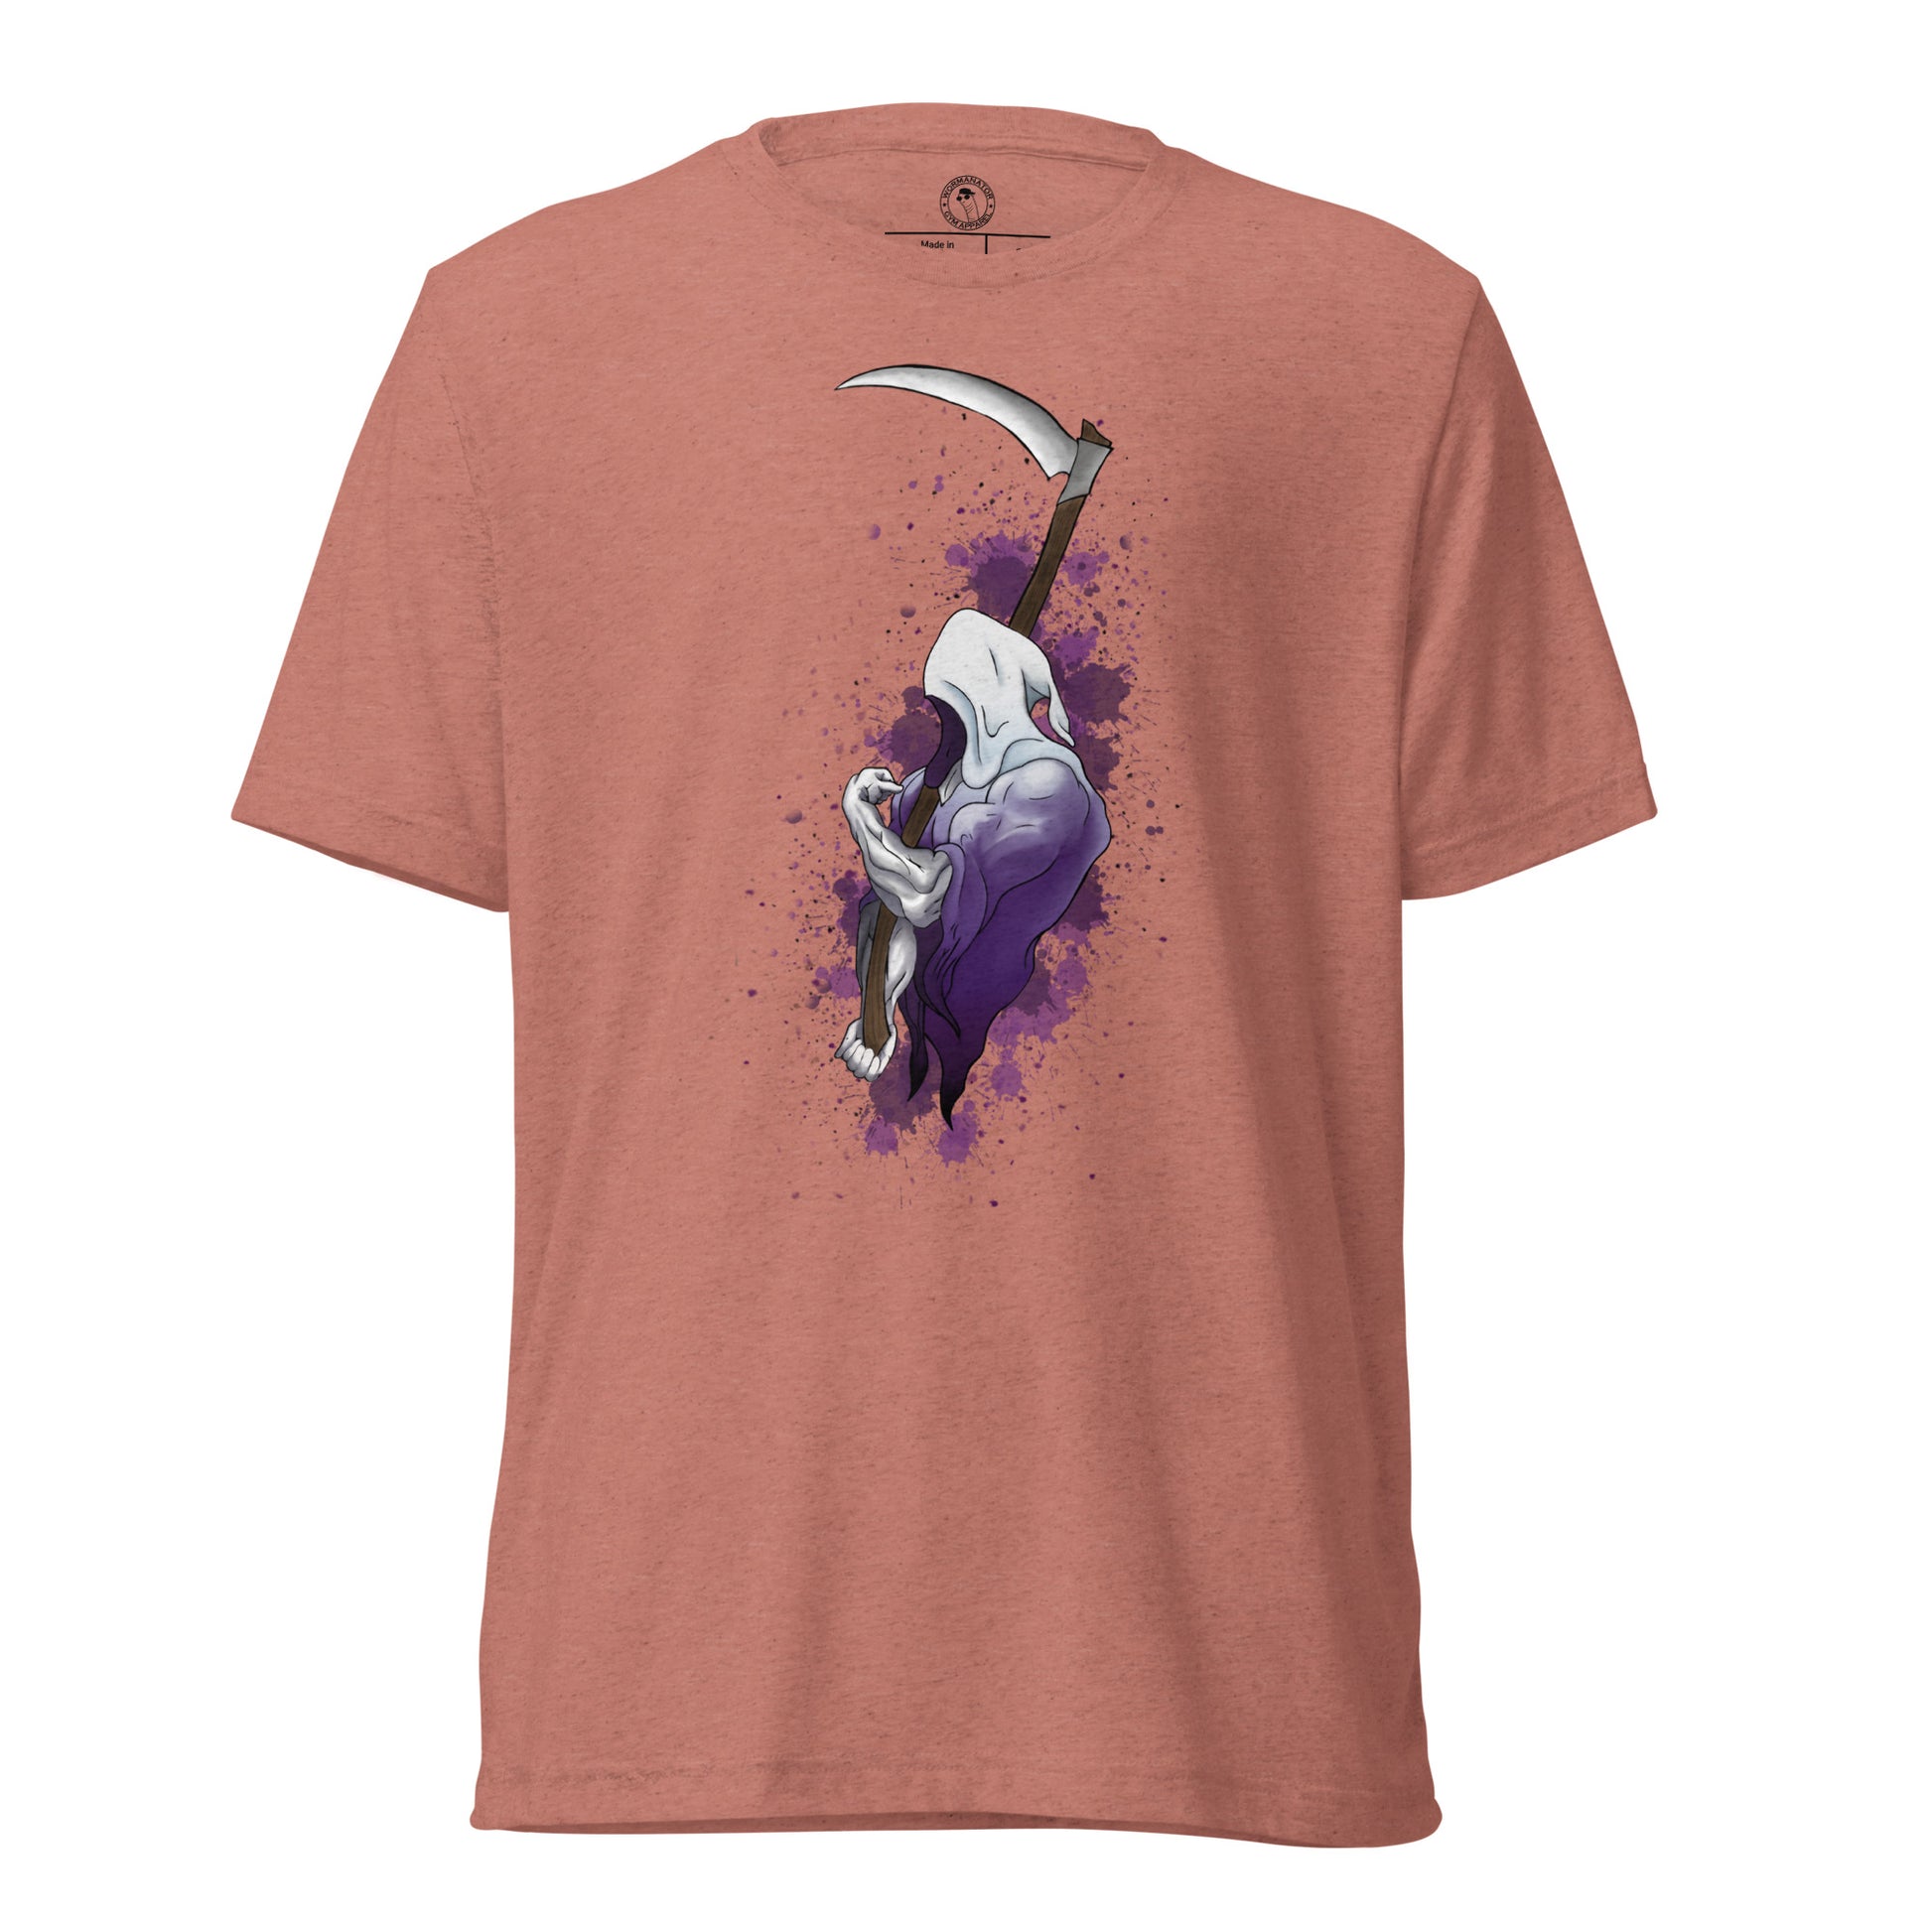 Grip Reaper Shirt in Mauve Triblend